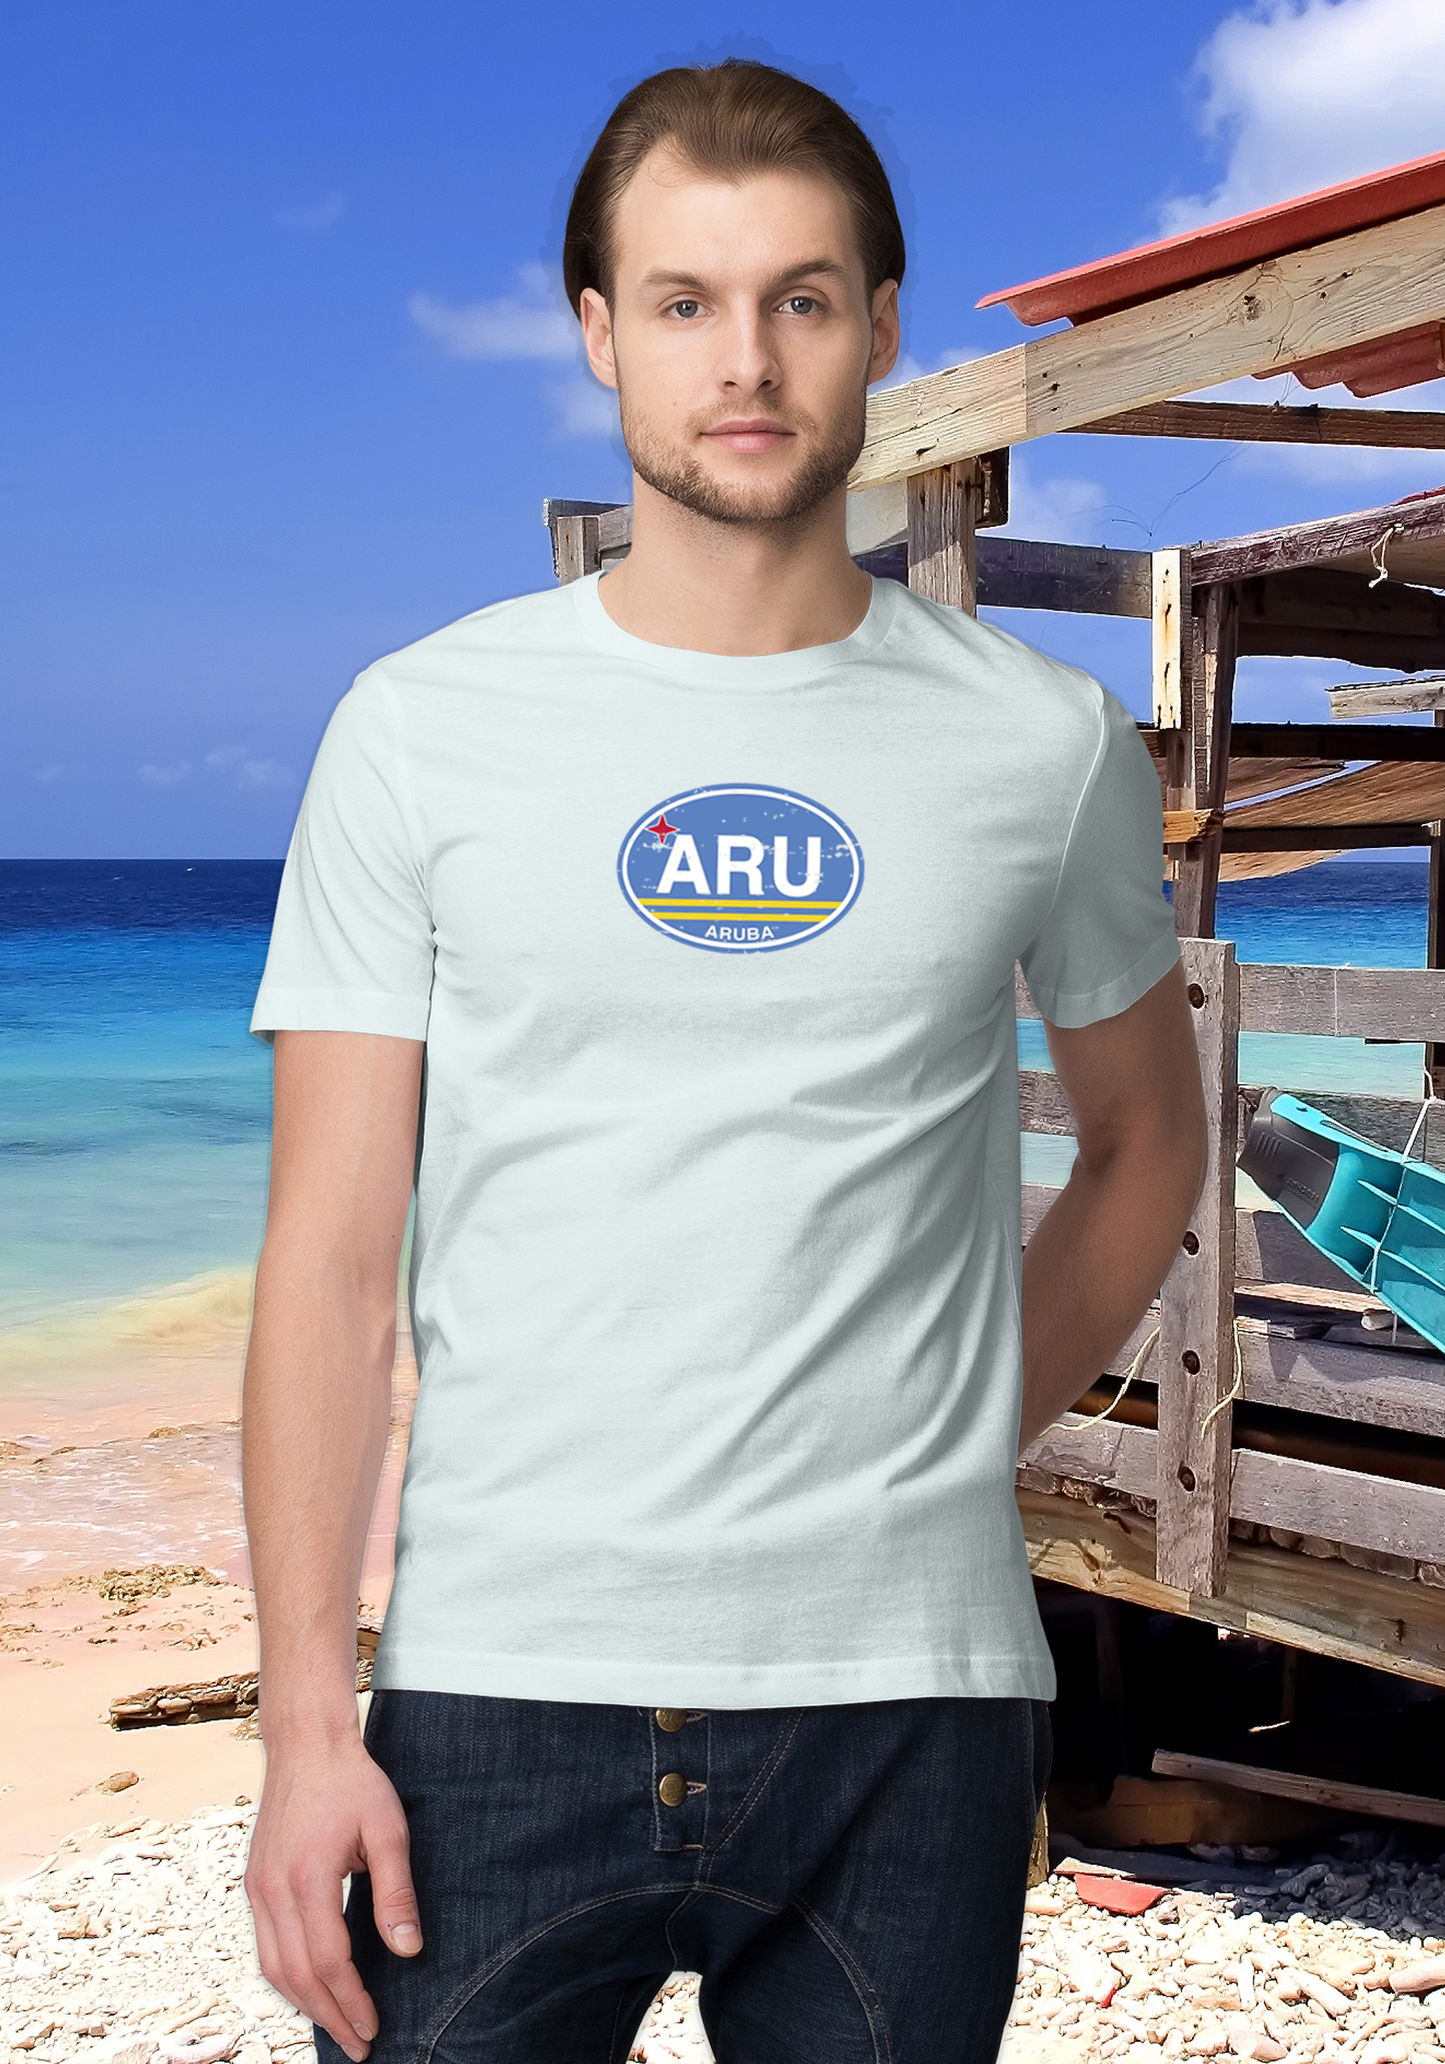 Aruba Men's Flag T-Shirt Souvenirs - My Destination Location